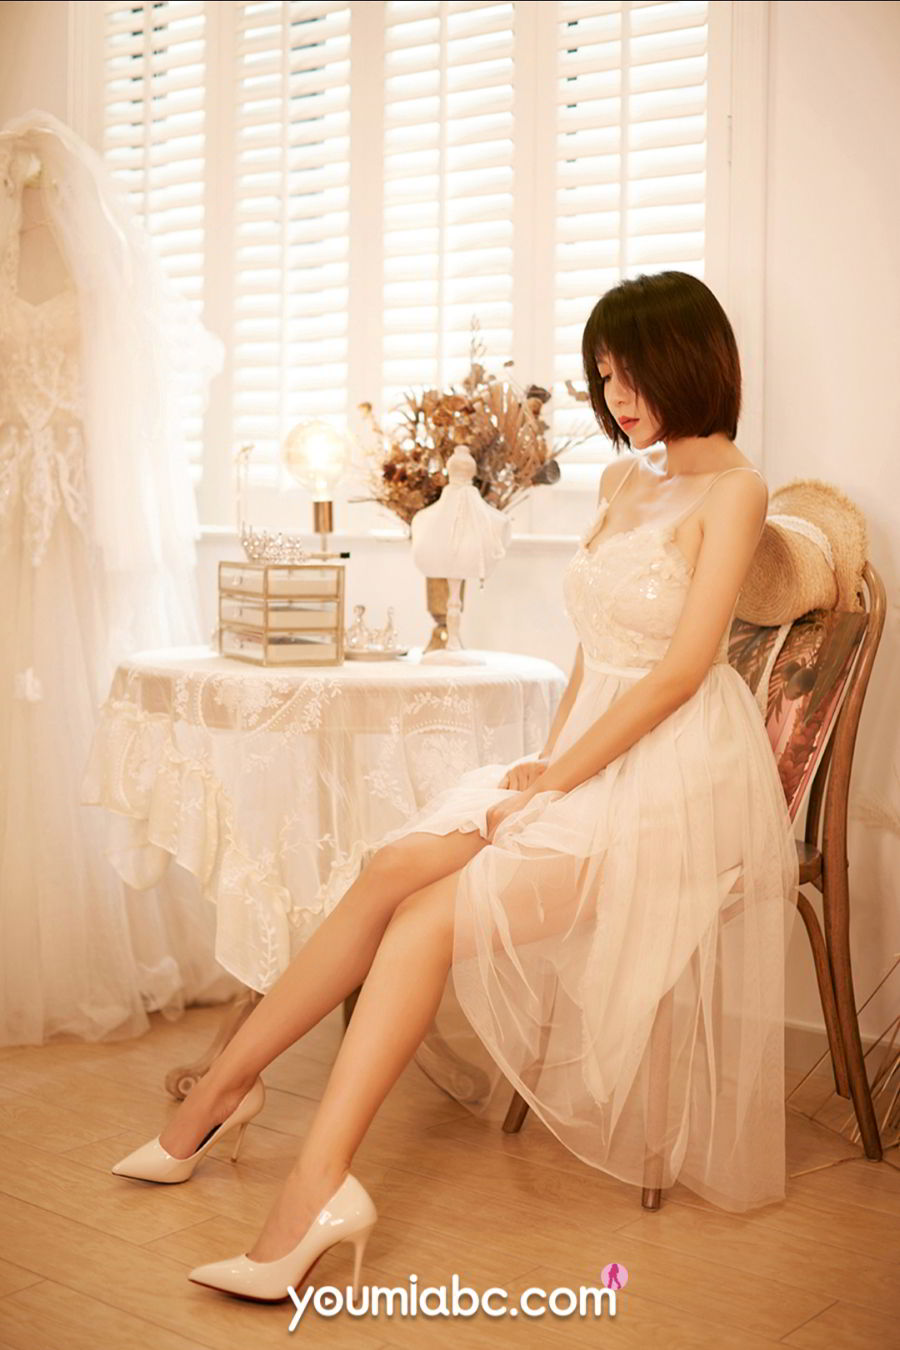 美女模特安妮斯朵拉纯白长裙+傲人双峰情趣写真